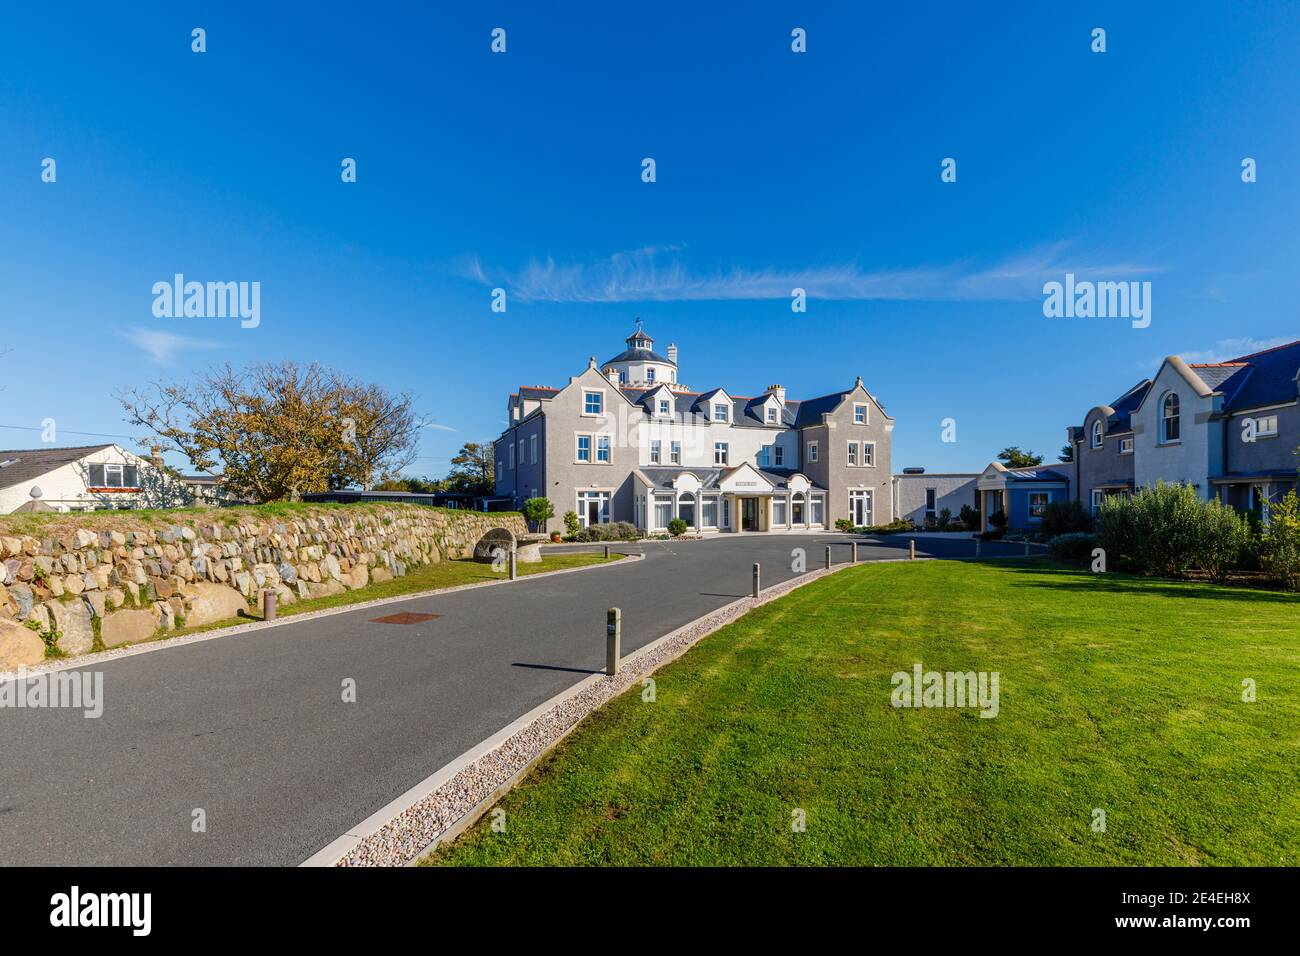 Der Eingang und das Äußere des Twr y Felin Hotels und Restaurants in St Davids, einer kleinen Domstadt in Pembrokeshire, Südwestwales an einem sonnigen Tag Stockfoto